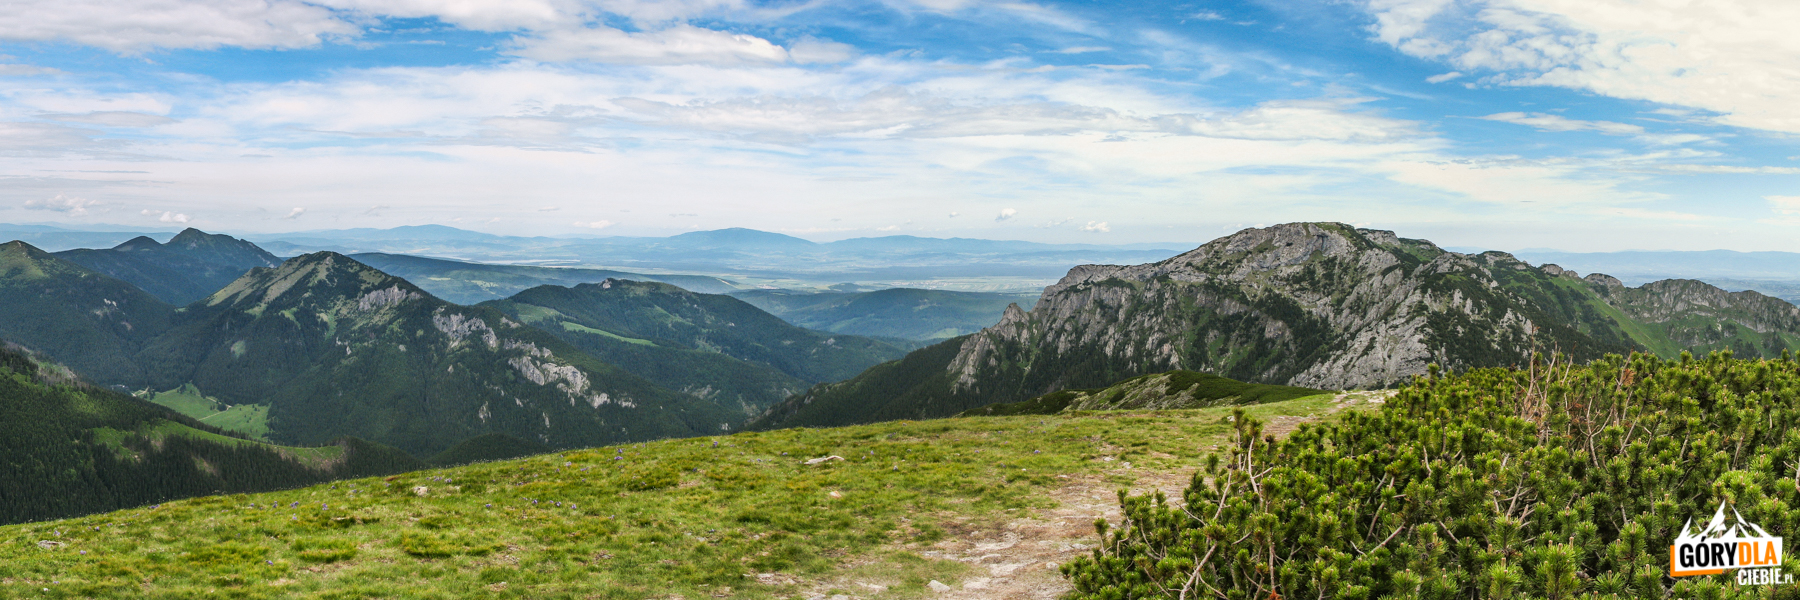 Widok z Suchego Wierchu Ornaczańskiego (1832 m) na Bpbrowiec (1663 m) i Kominarski Wierch (1829 m), na horyzoncie widoczne Pilsko (1557 m) i Babia Góra (1725 m)